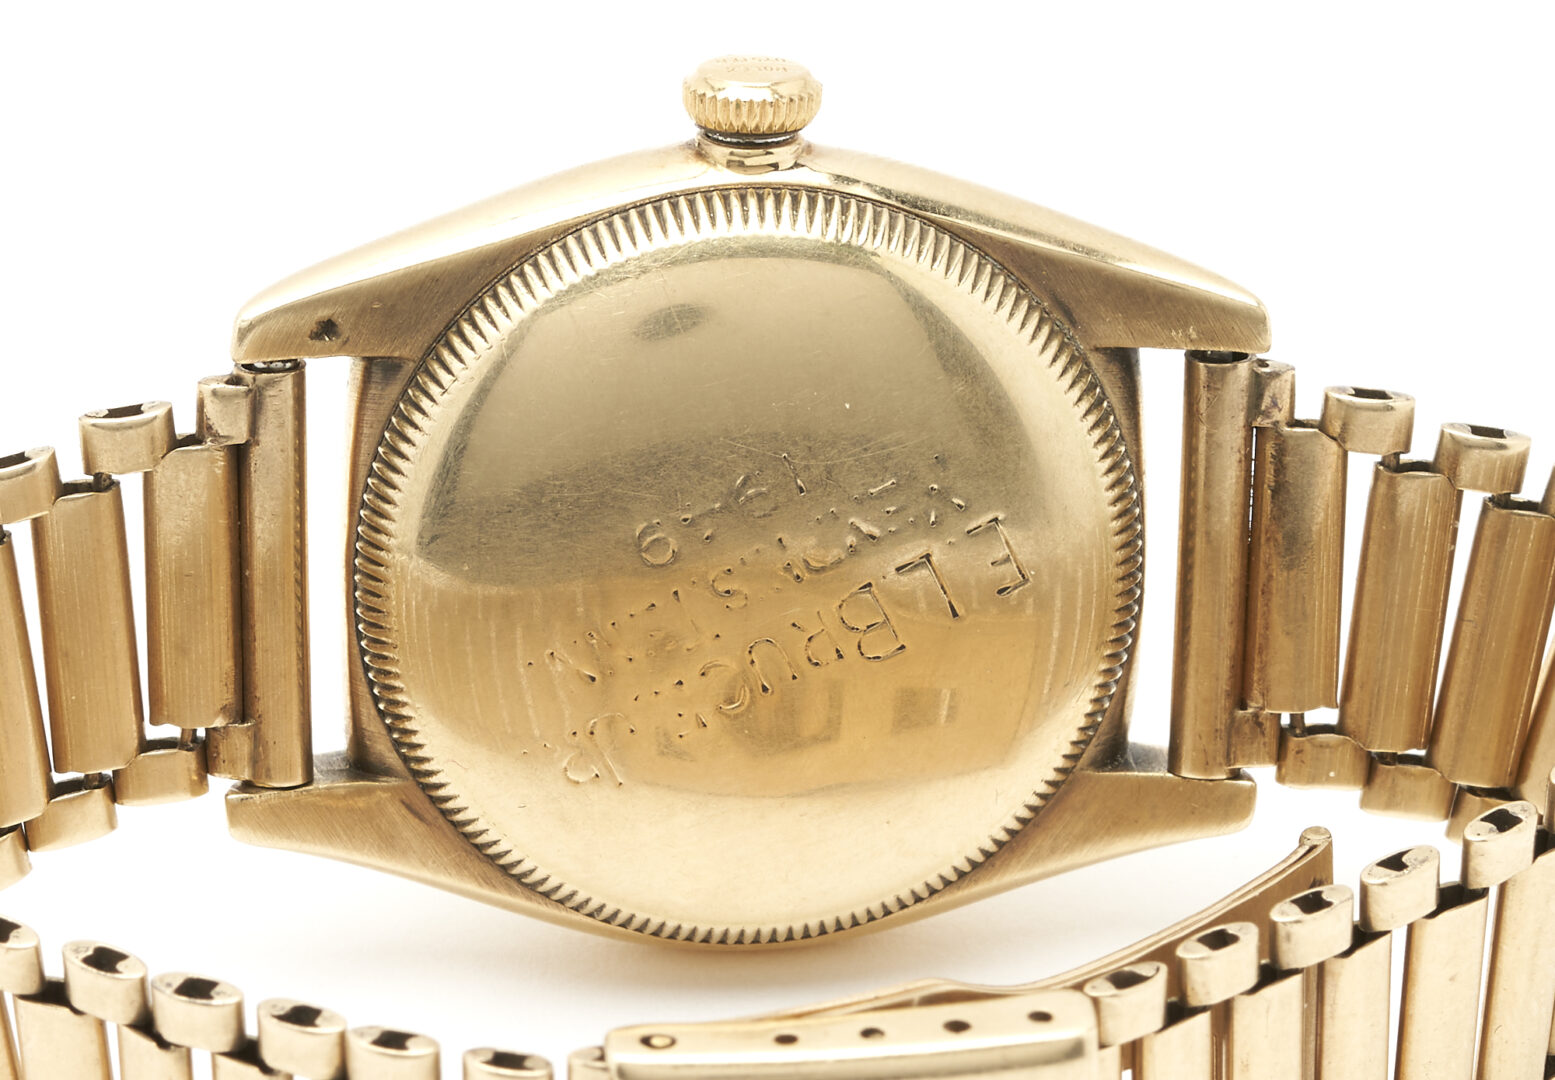 Lot 39: Men's Vintage 14K Bubble Back Rolex Wristwatch, Circa 1947